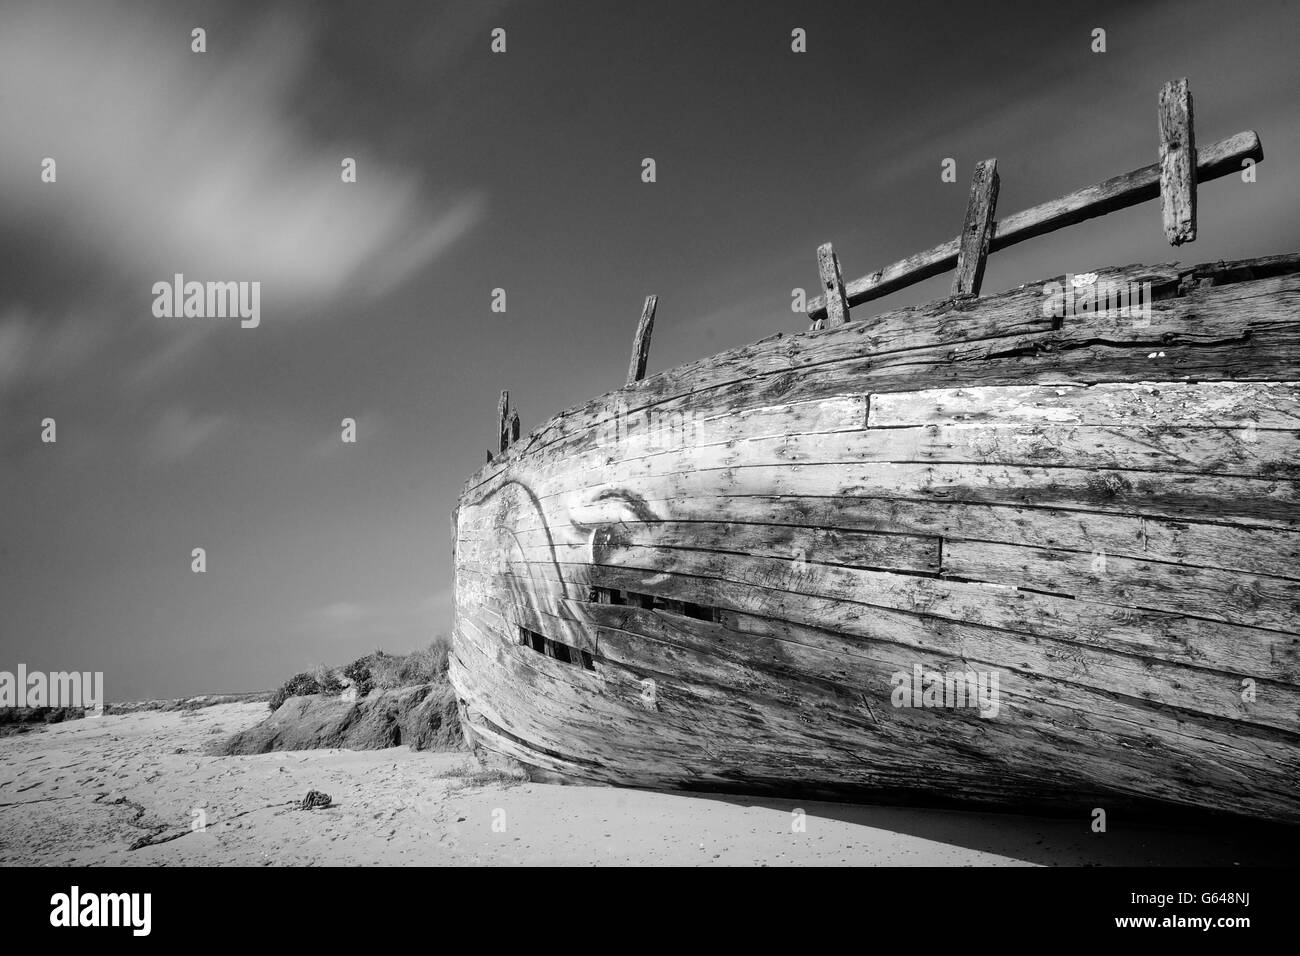 Épave onirique surréaliste en noir et blanc, monochrome - et ancien bateau de pêche abandonnés sur la côte Banque D'Images